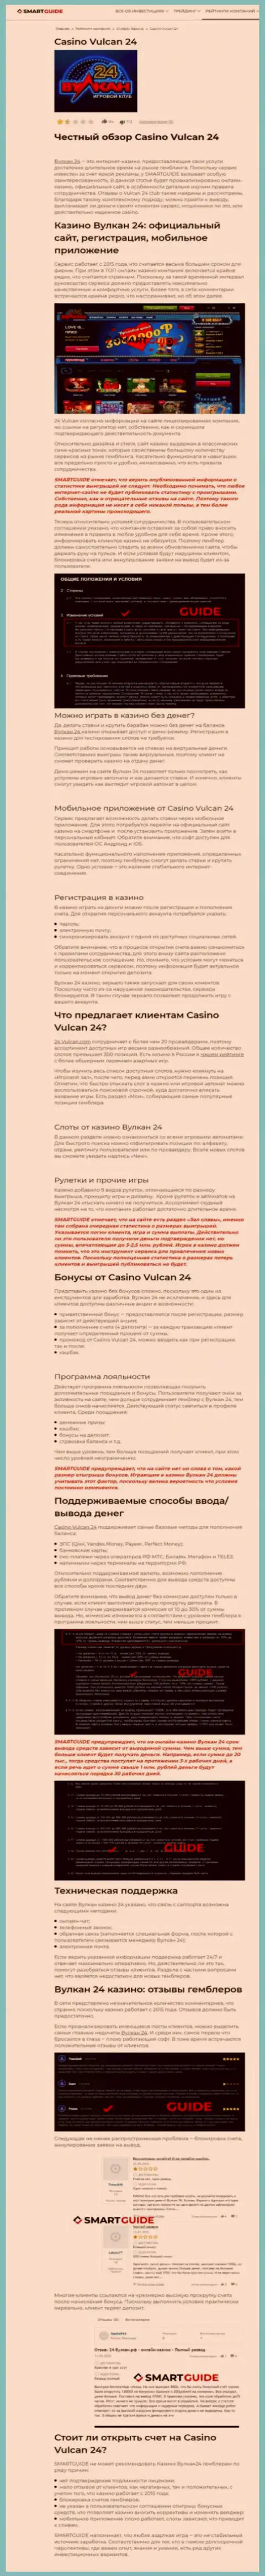 Вулкан-24 Ком - это организация, которая зарабатывает на воровстве денежных вкладов своих реальных клиентов (обзор неправомерных действий)